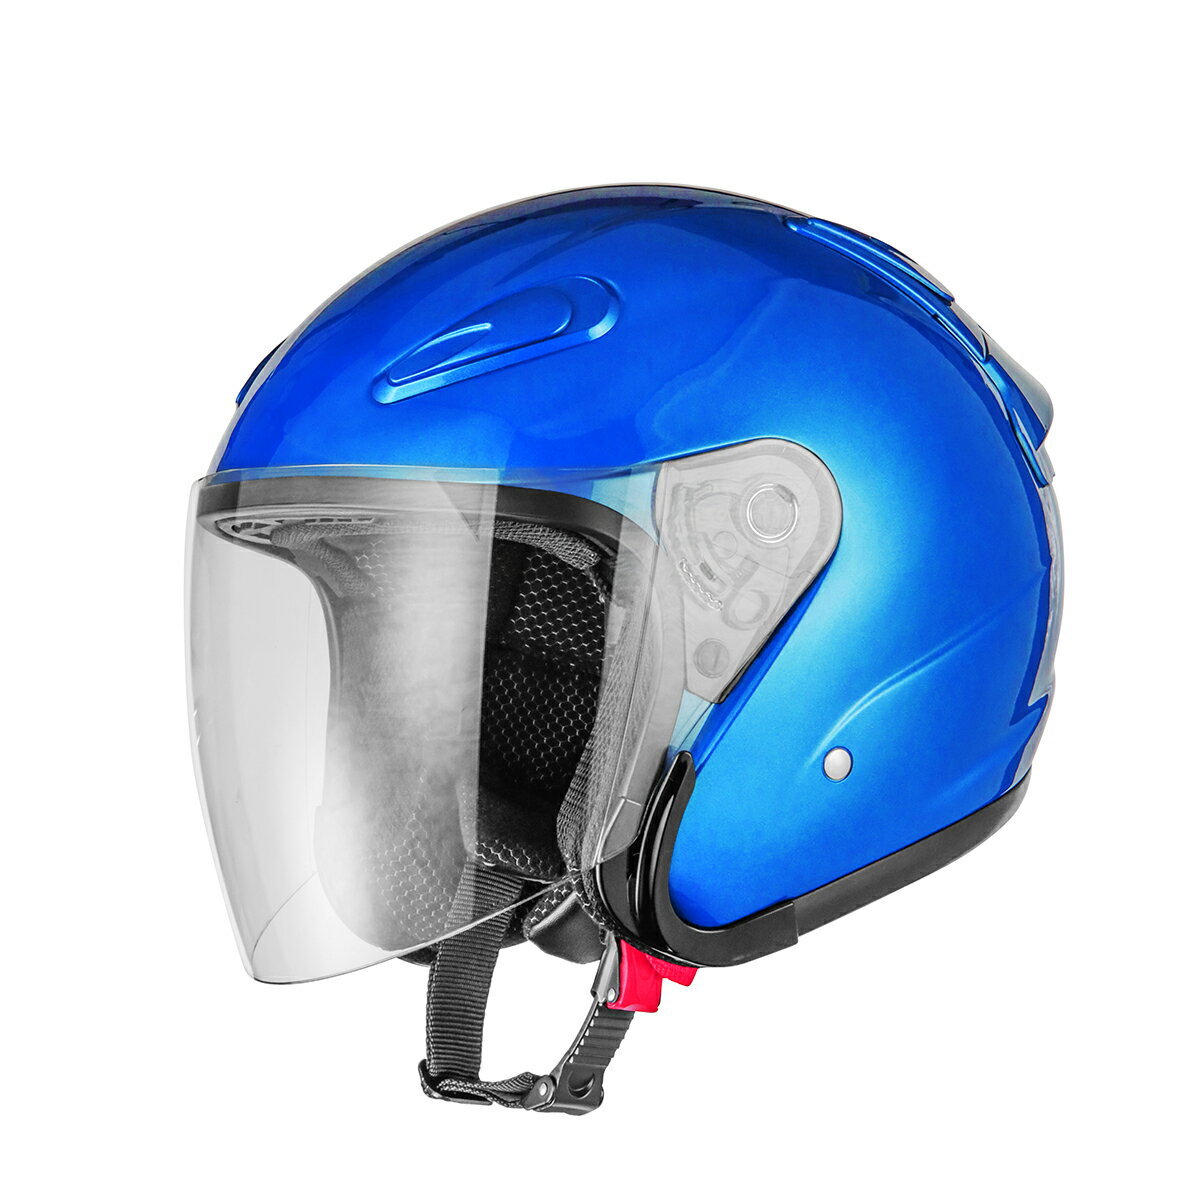 バイクヘルメット エアロフォルムジェットヘルメット ブルー Lサイズ SG規格適合 PSCマーク付 バイク オートバイ ヘルメット バイクパーツセンター